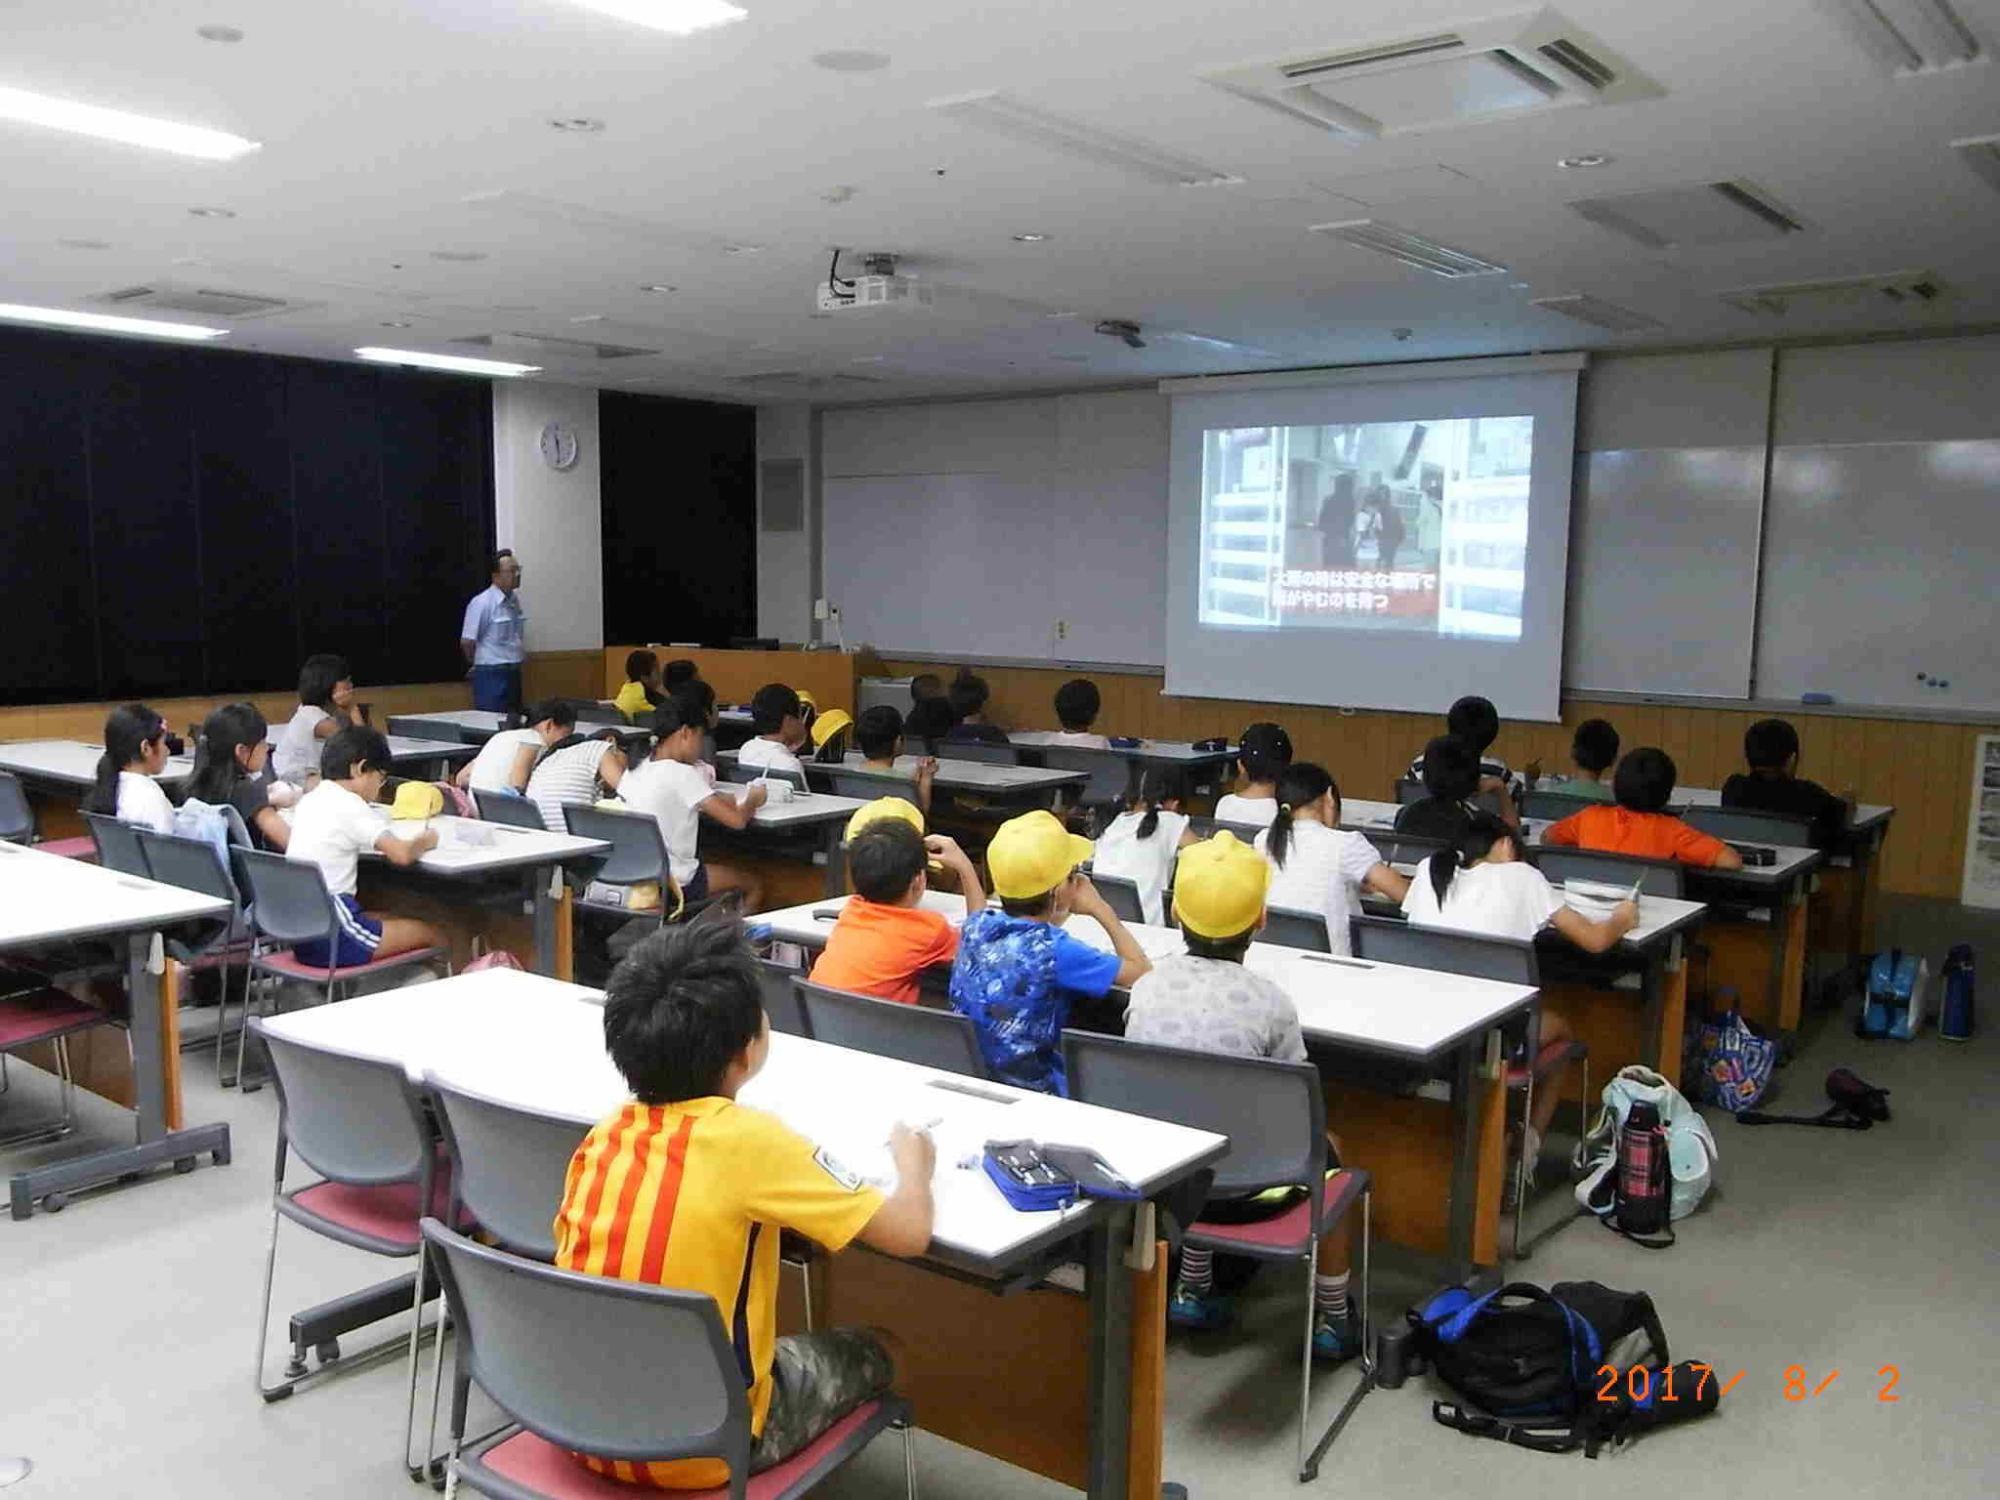 白い机が並び生徒がそれぞれ着席しスクリーンの映像見ているところを右後から撮った写真